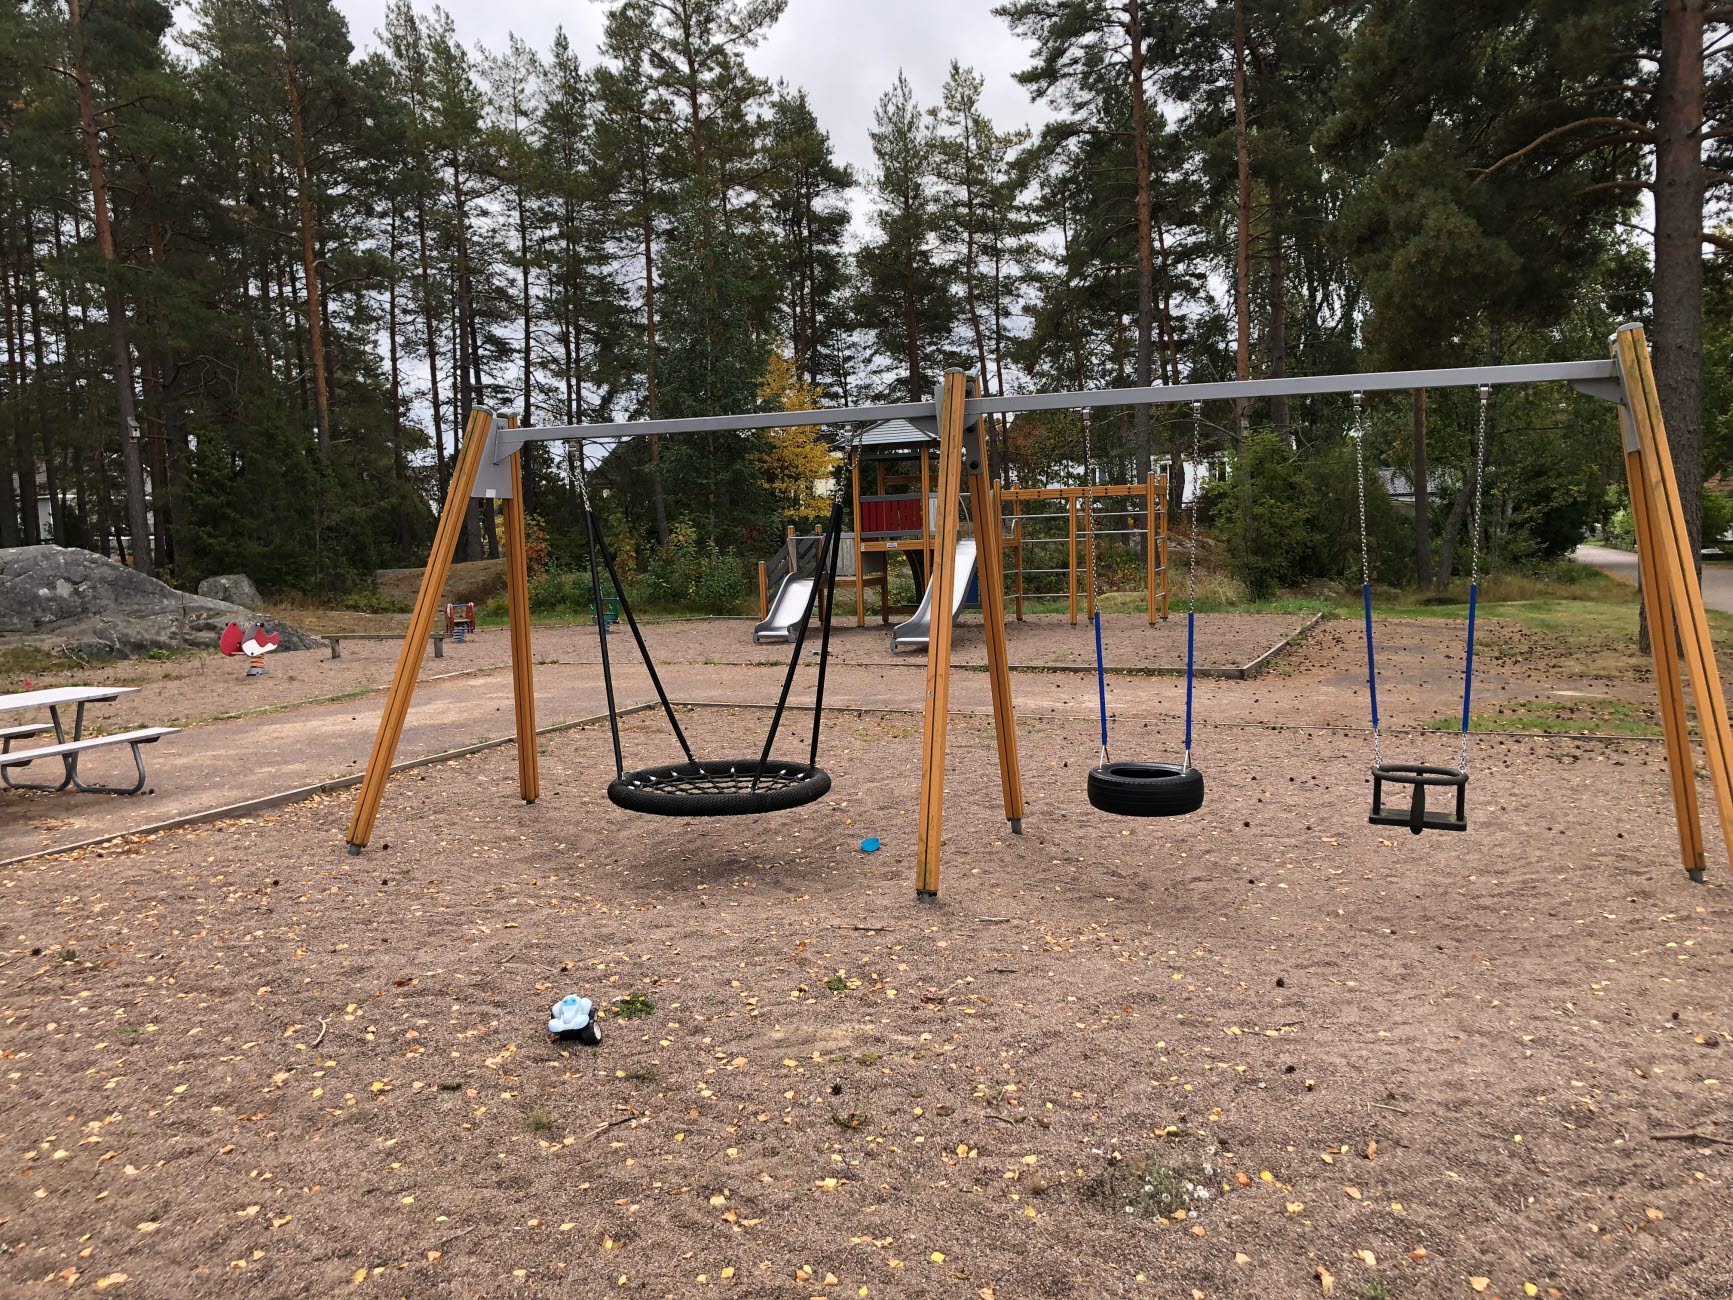 På Henstadpromenadens lekplats finns bland annat klätterställning och en kompisgunga. 